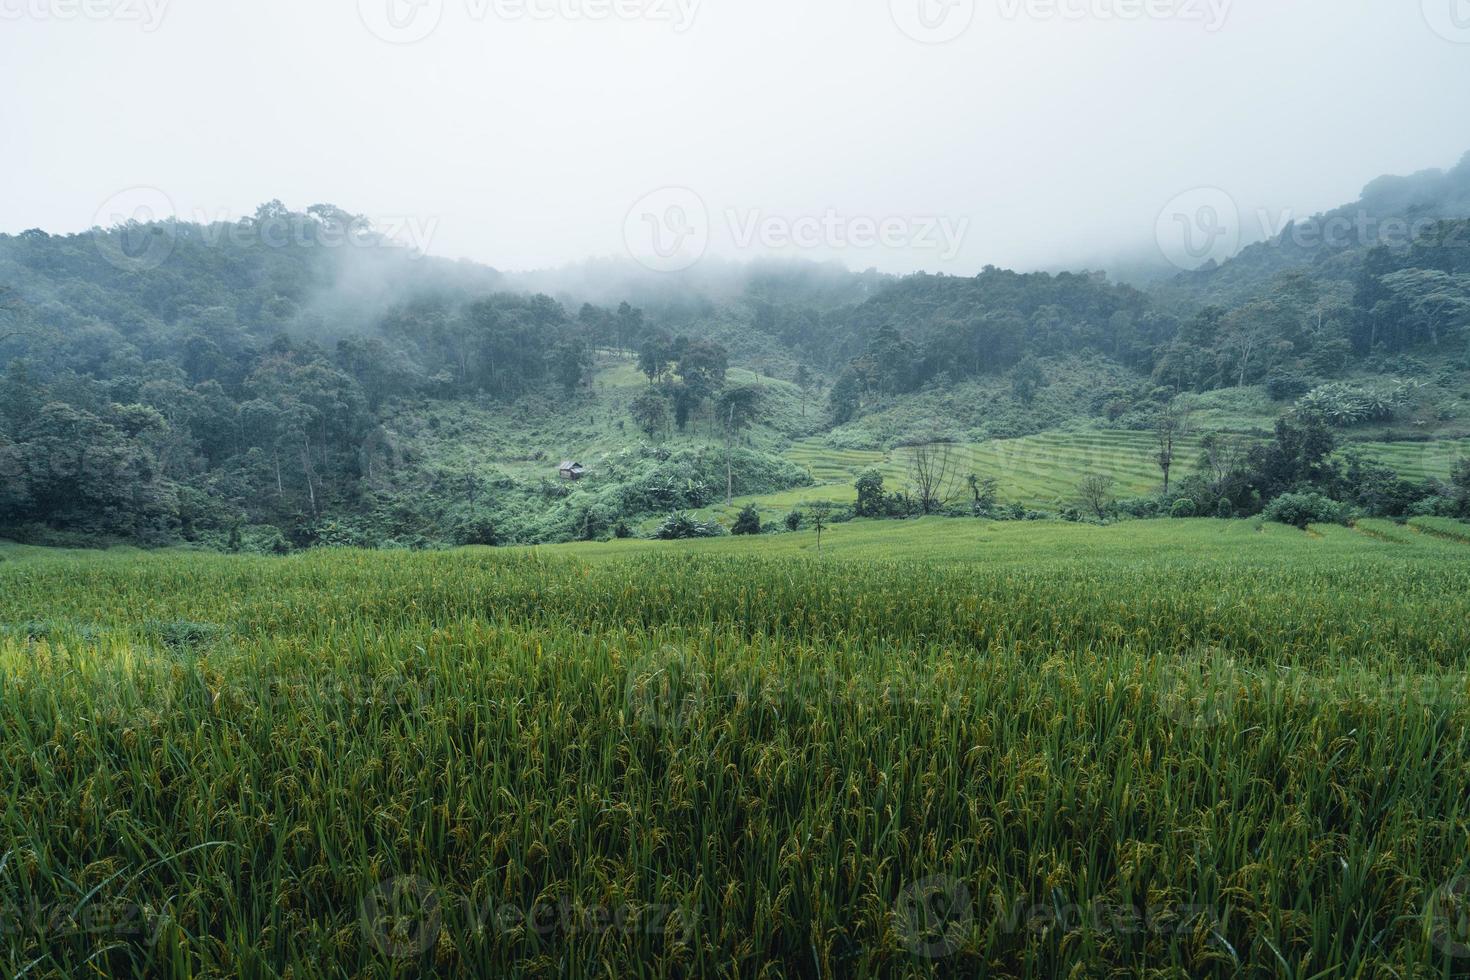 arrozales y campos de arroz en un día lluvioso. foto